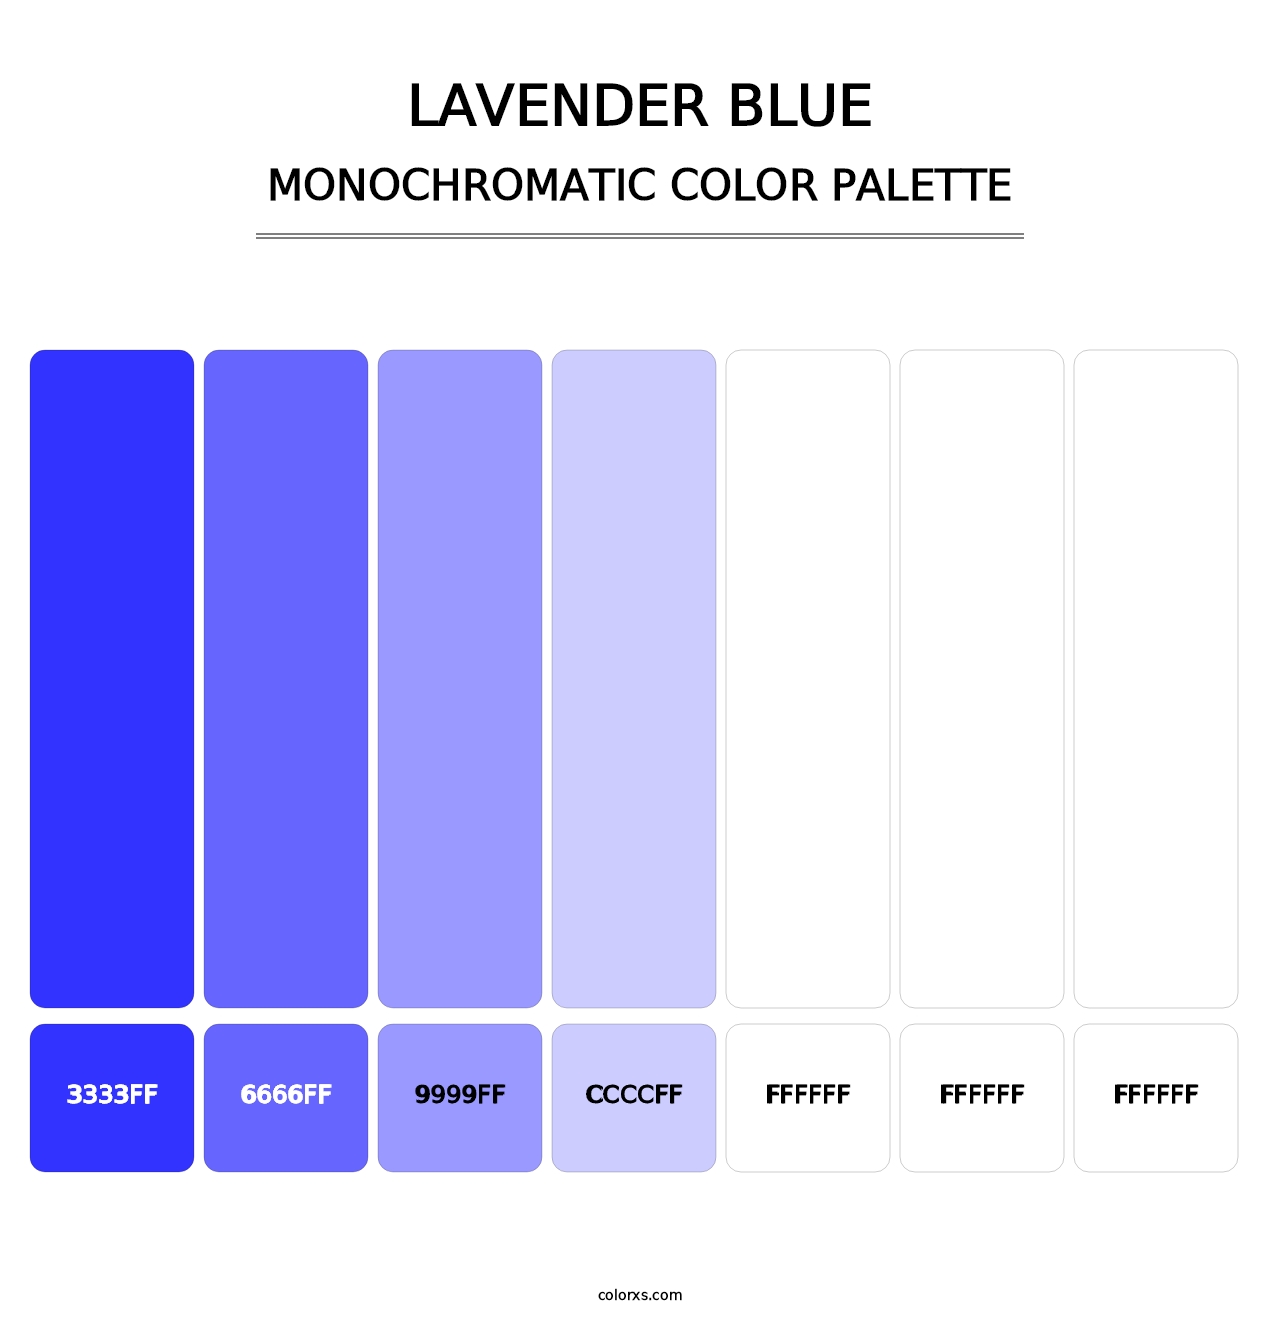 Lavender Blue - Monochromatic Color Palette